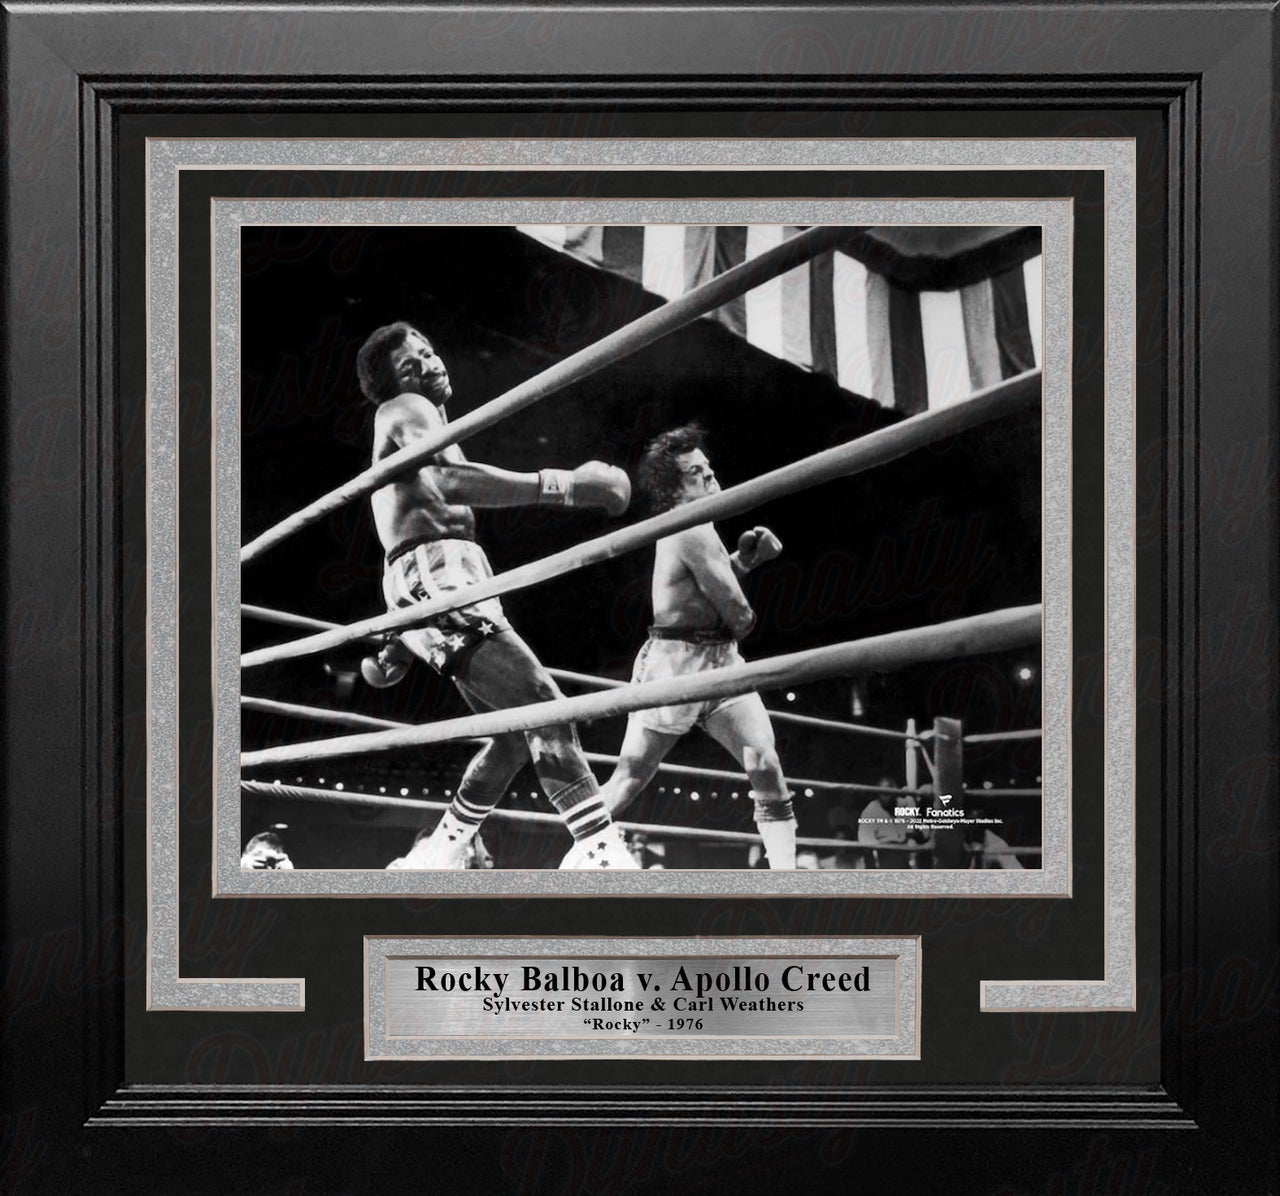 Rocky Balboa v. Apollo Creed 8" x 10" Framed Movie Photo - Dynasty Sports & Framing 